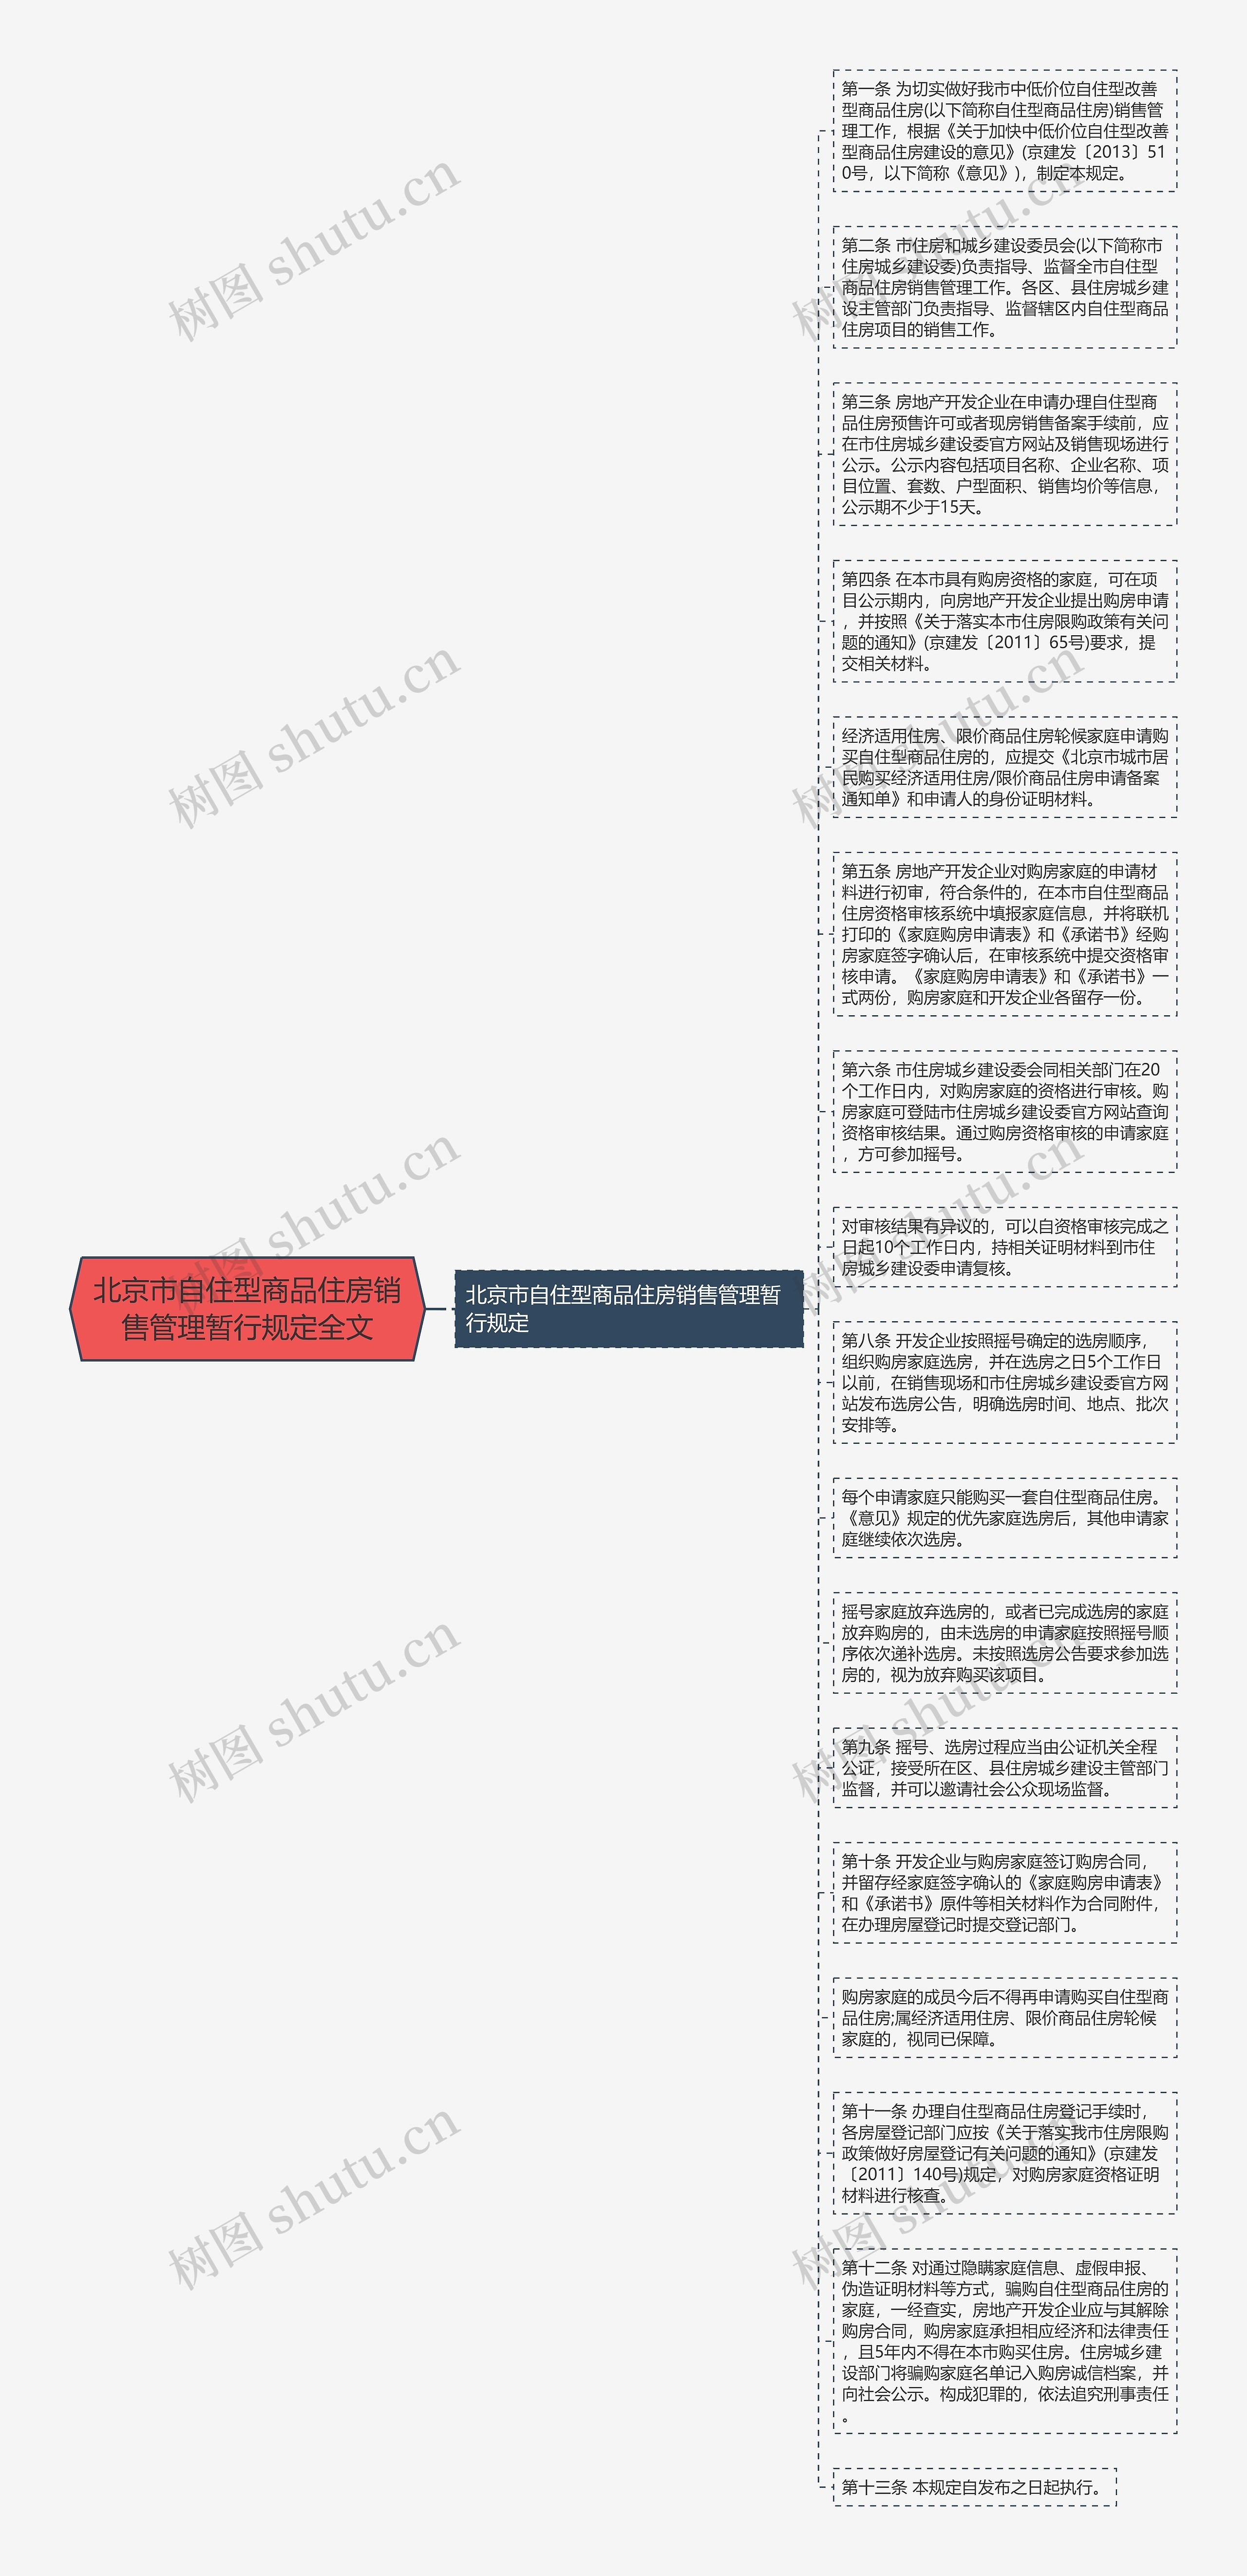 北京市自住型商品住房销售管理暂行规定全文